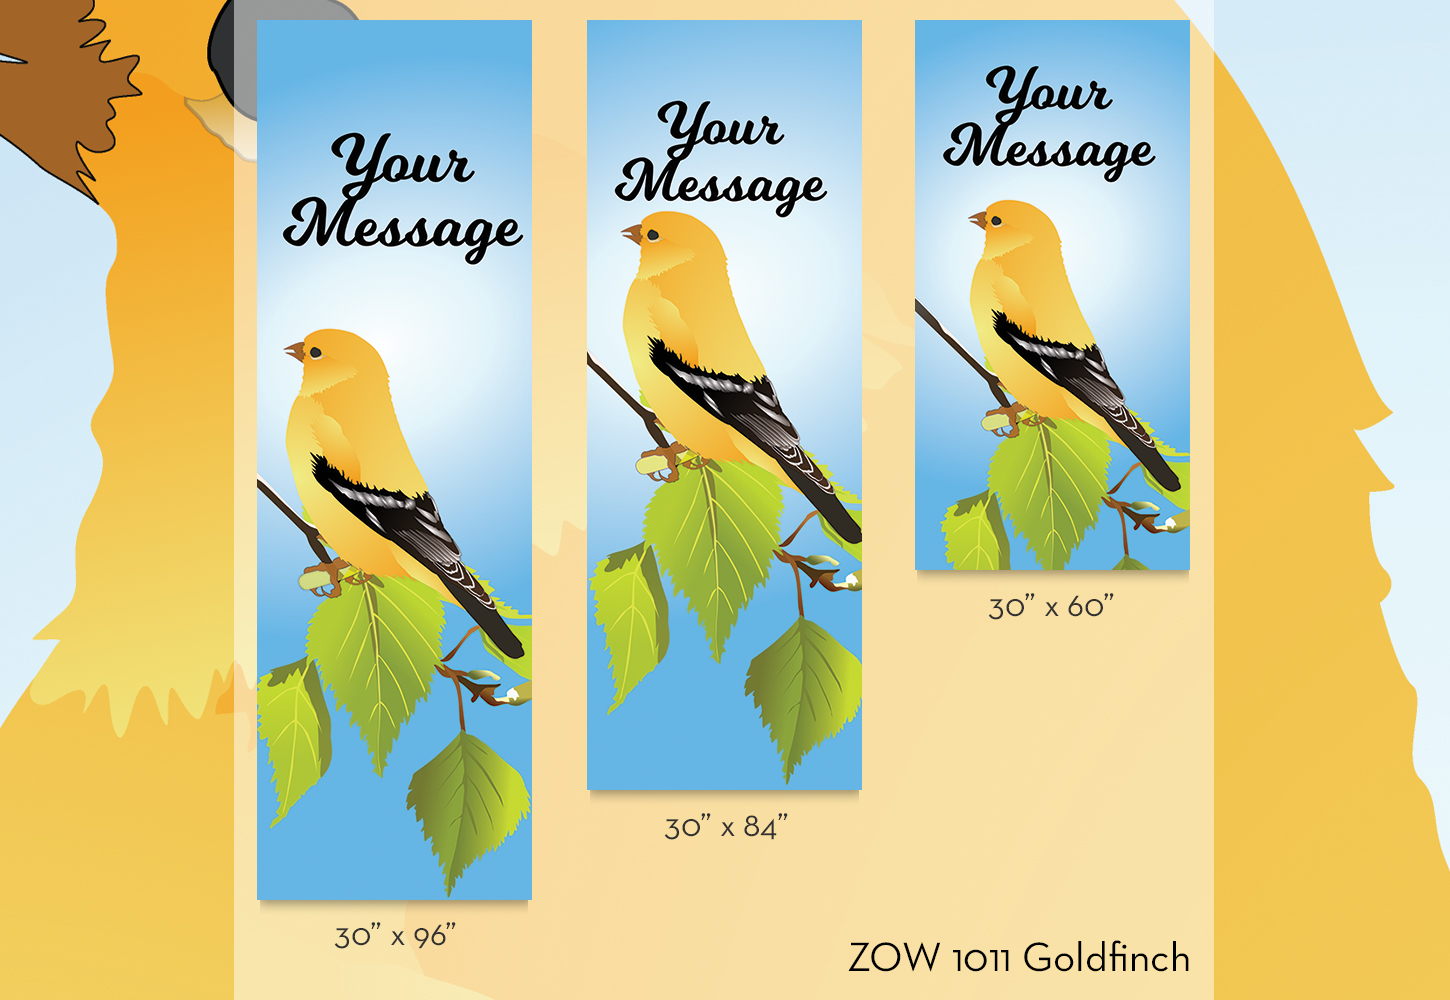 ZOW 1011 Goldfinch